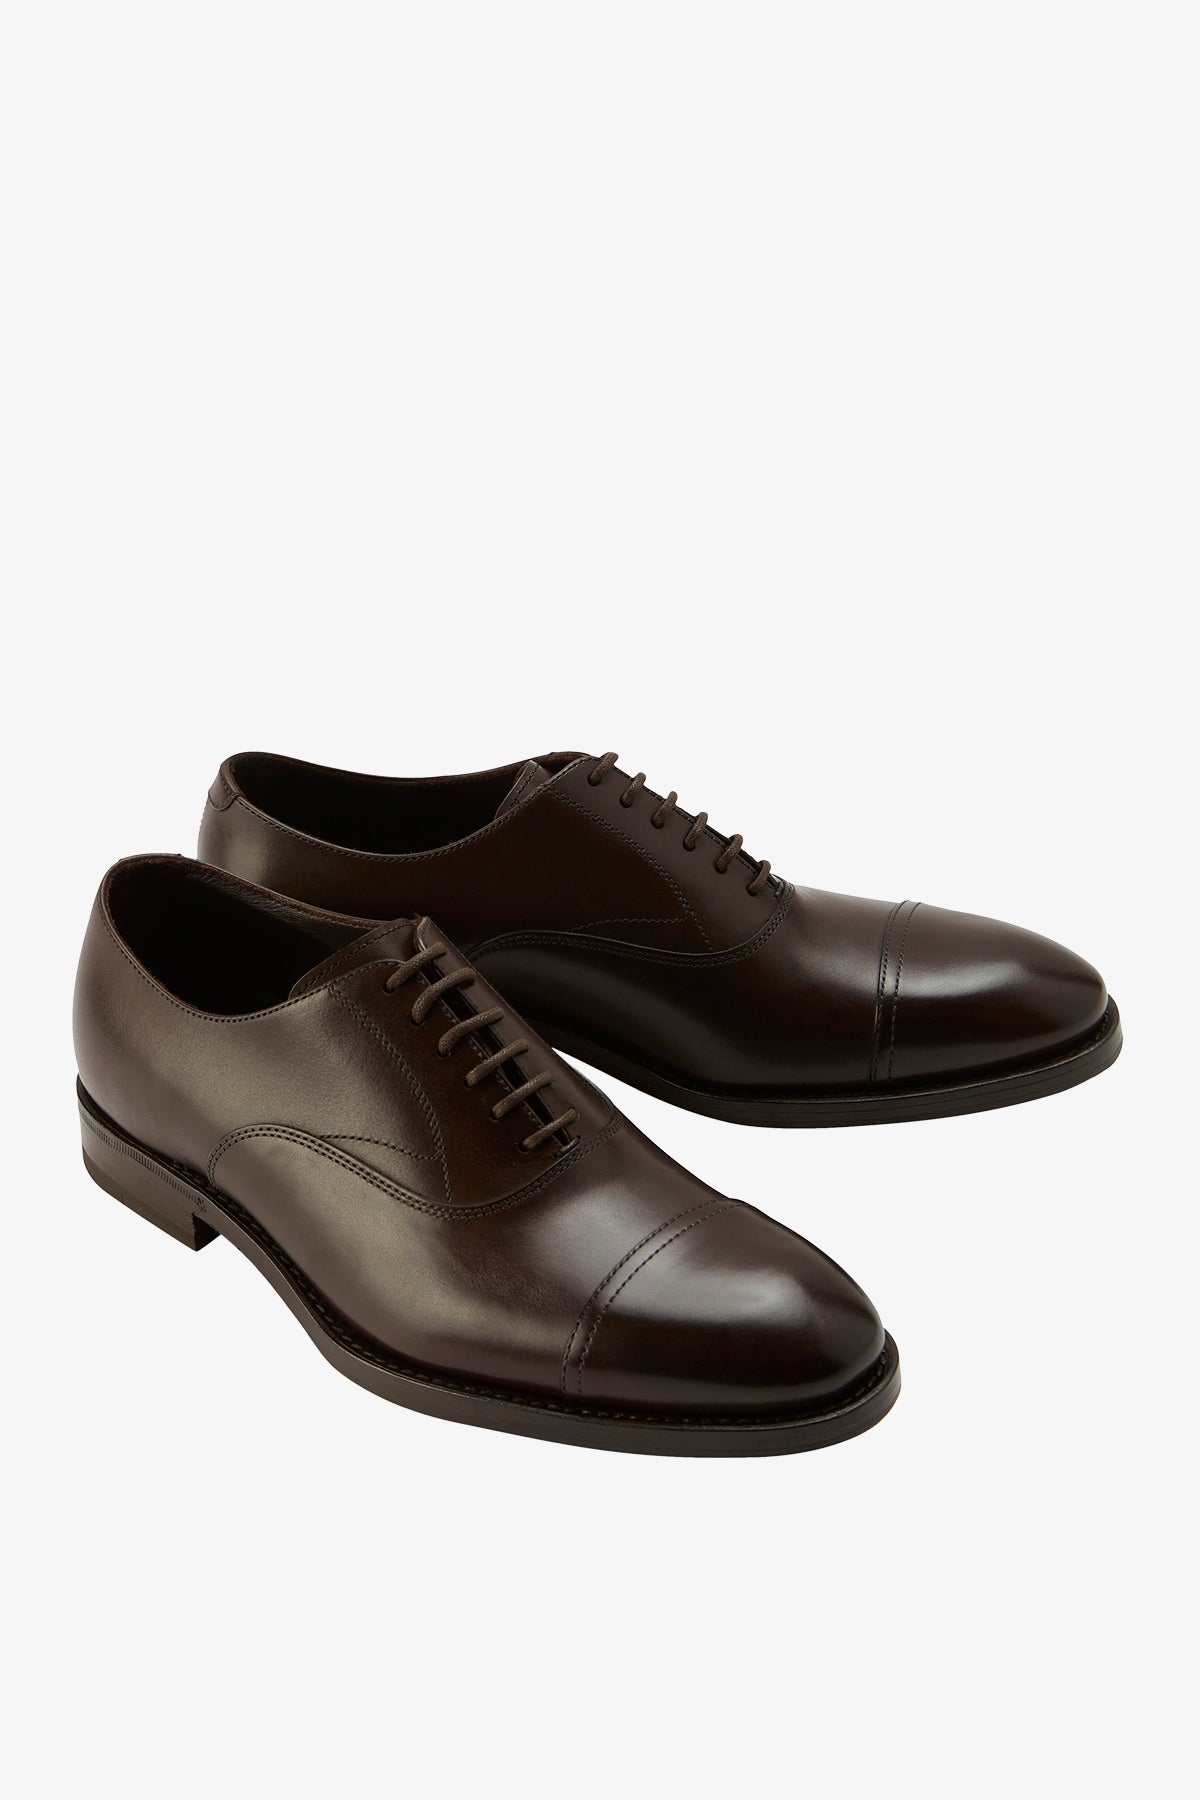 Oxford - Dark Brown Shoe